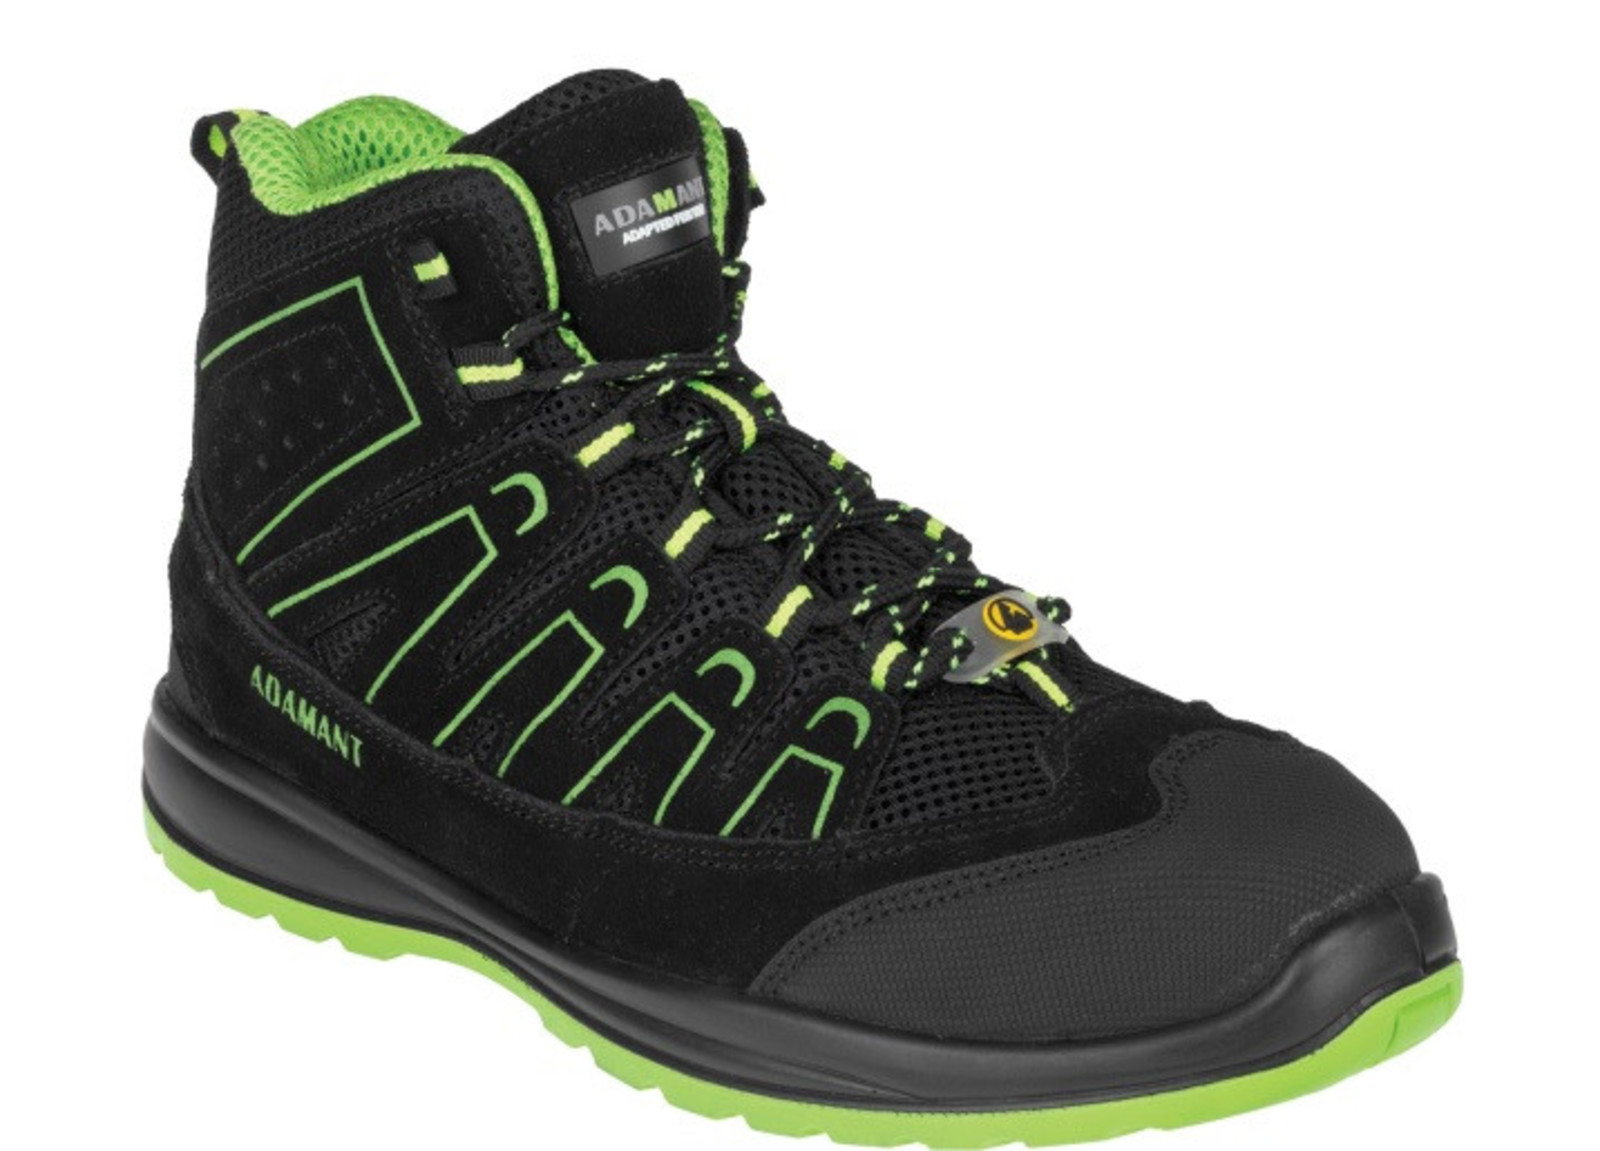 Bezpečnostná obuv Adamant Alegro S1P ESD - veľkosť: 37, farba: čierna/zelená